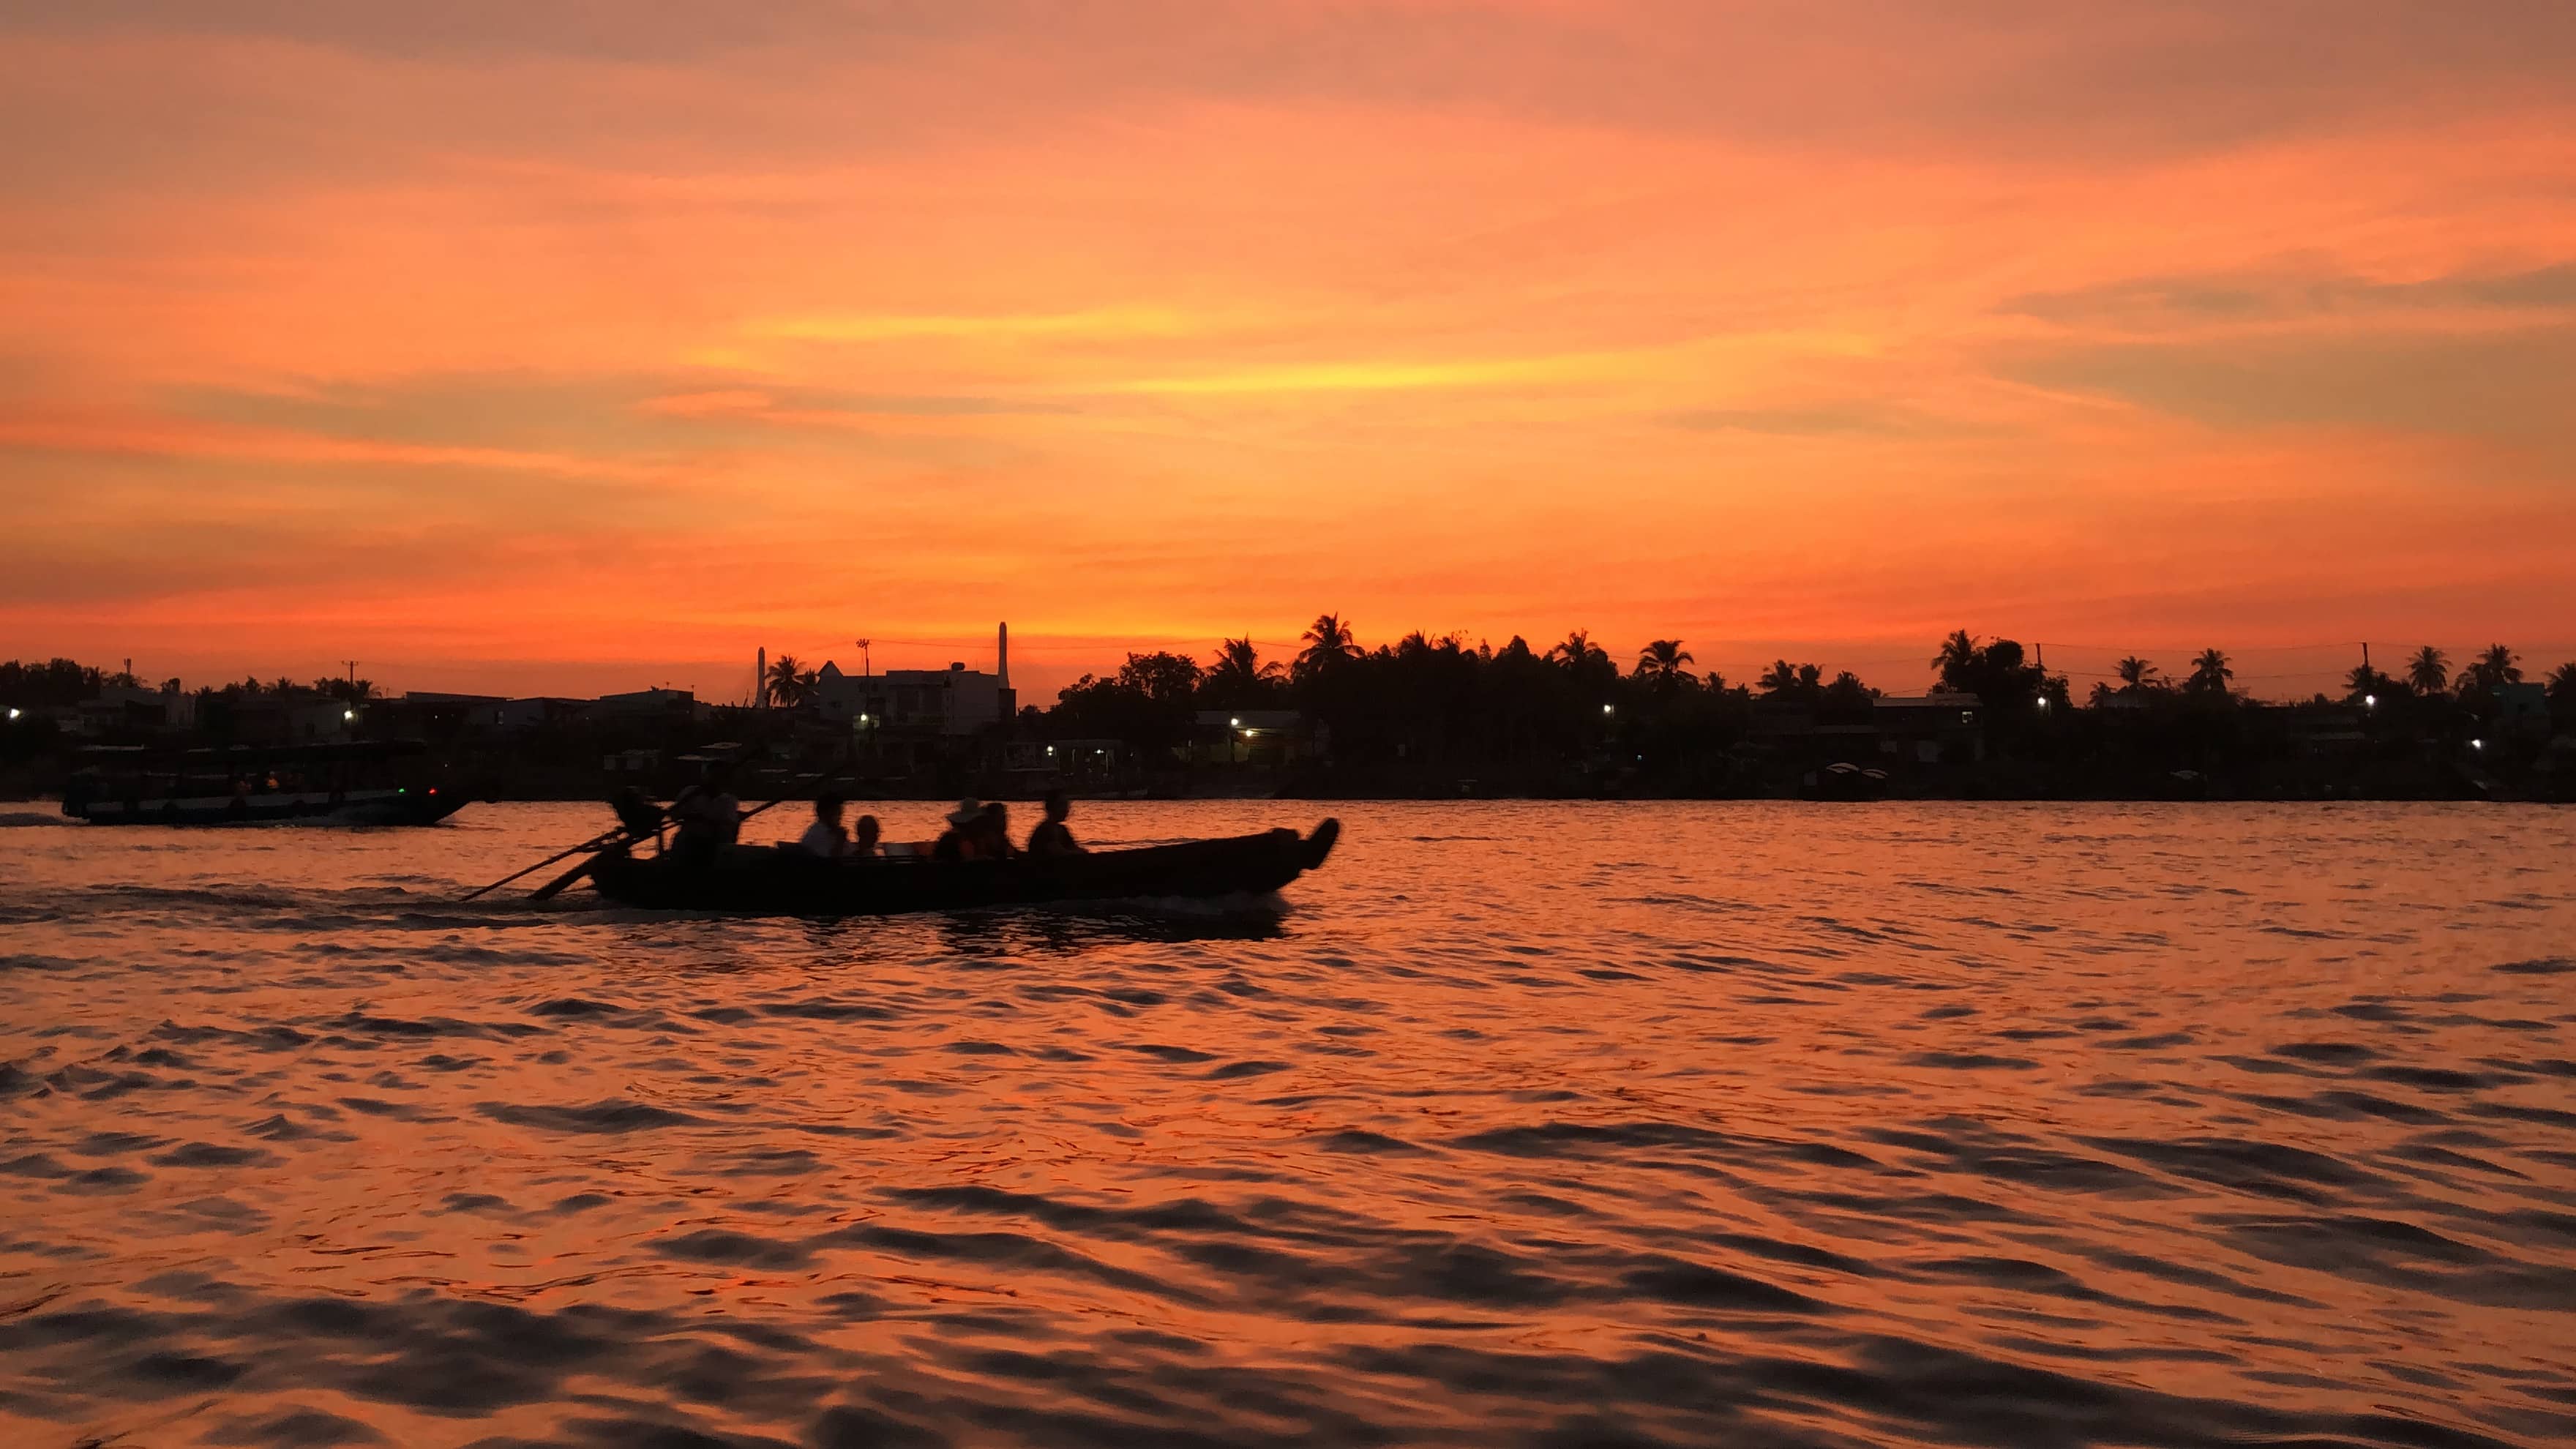 Sunrise over the Mekong Delta